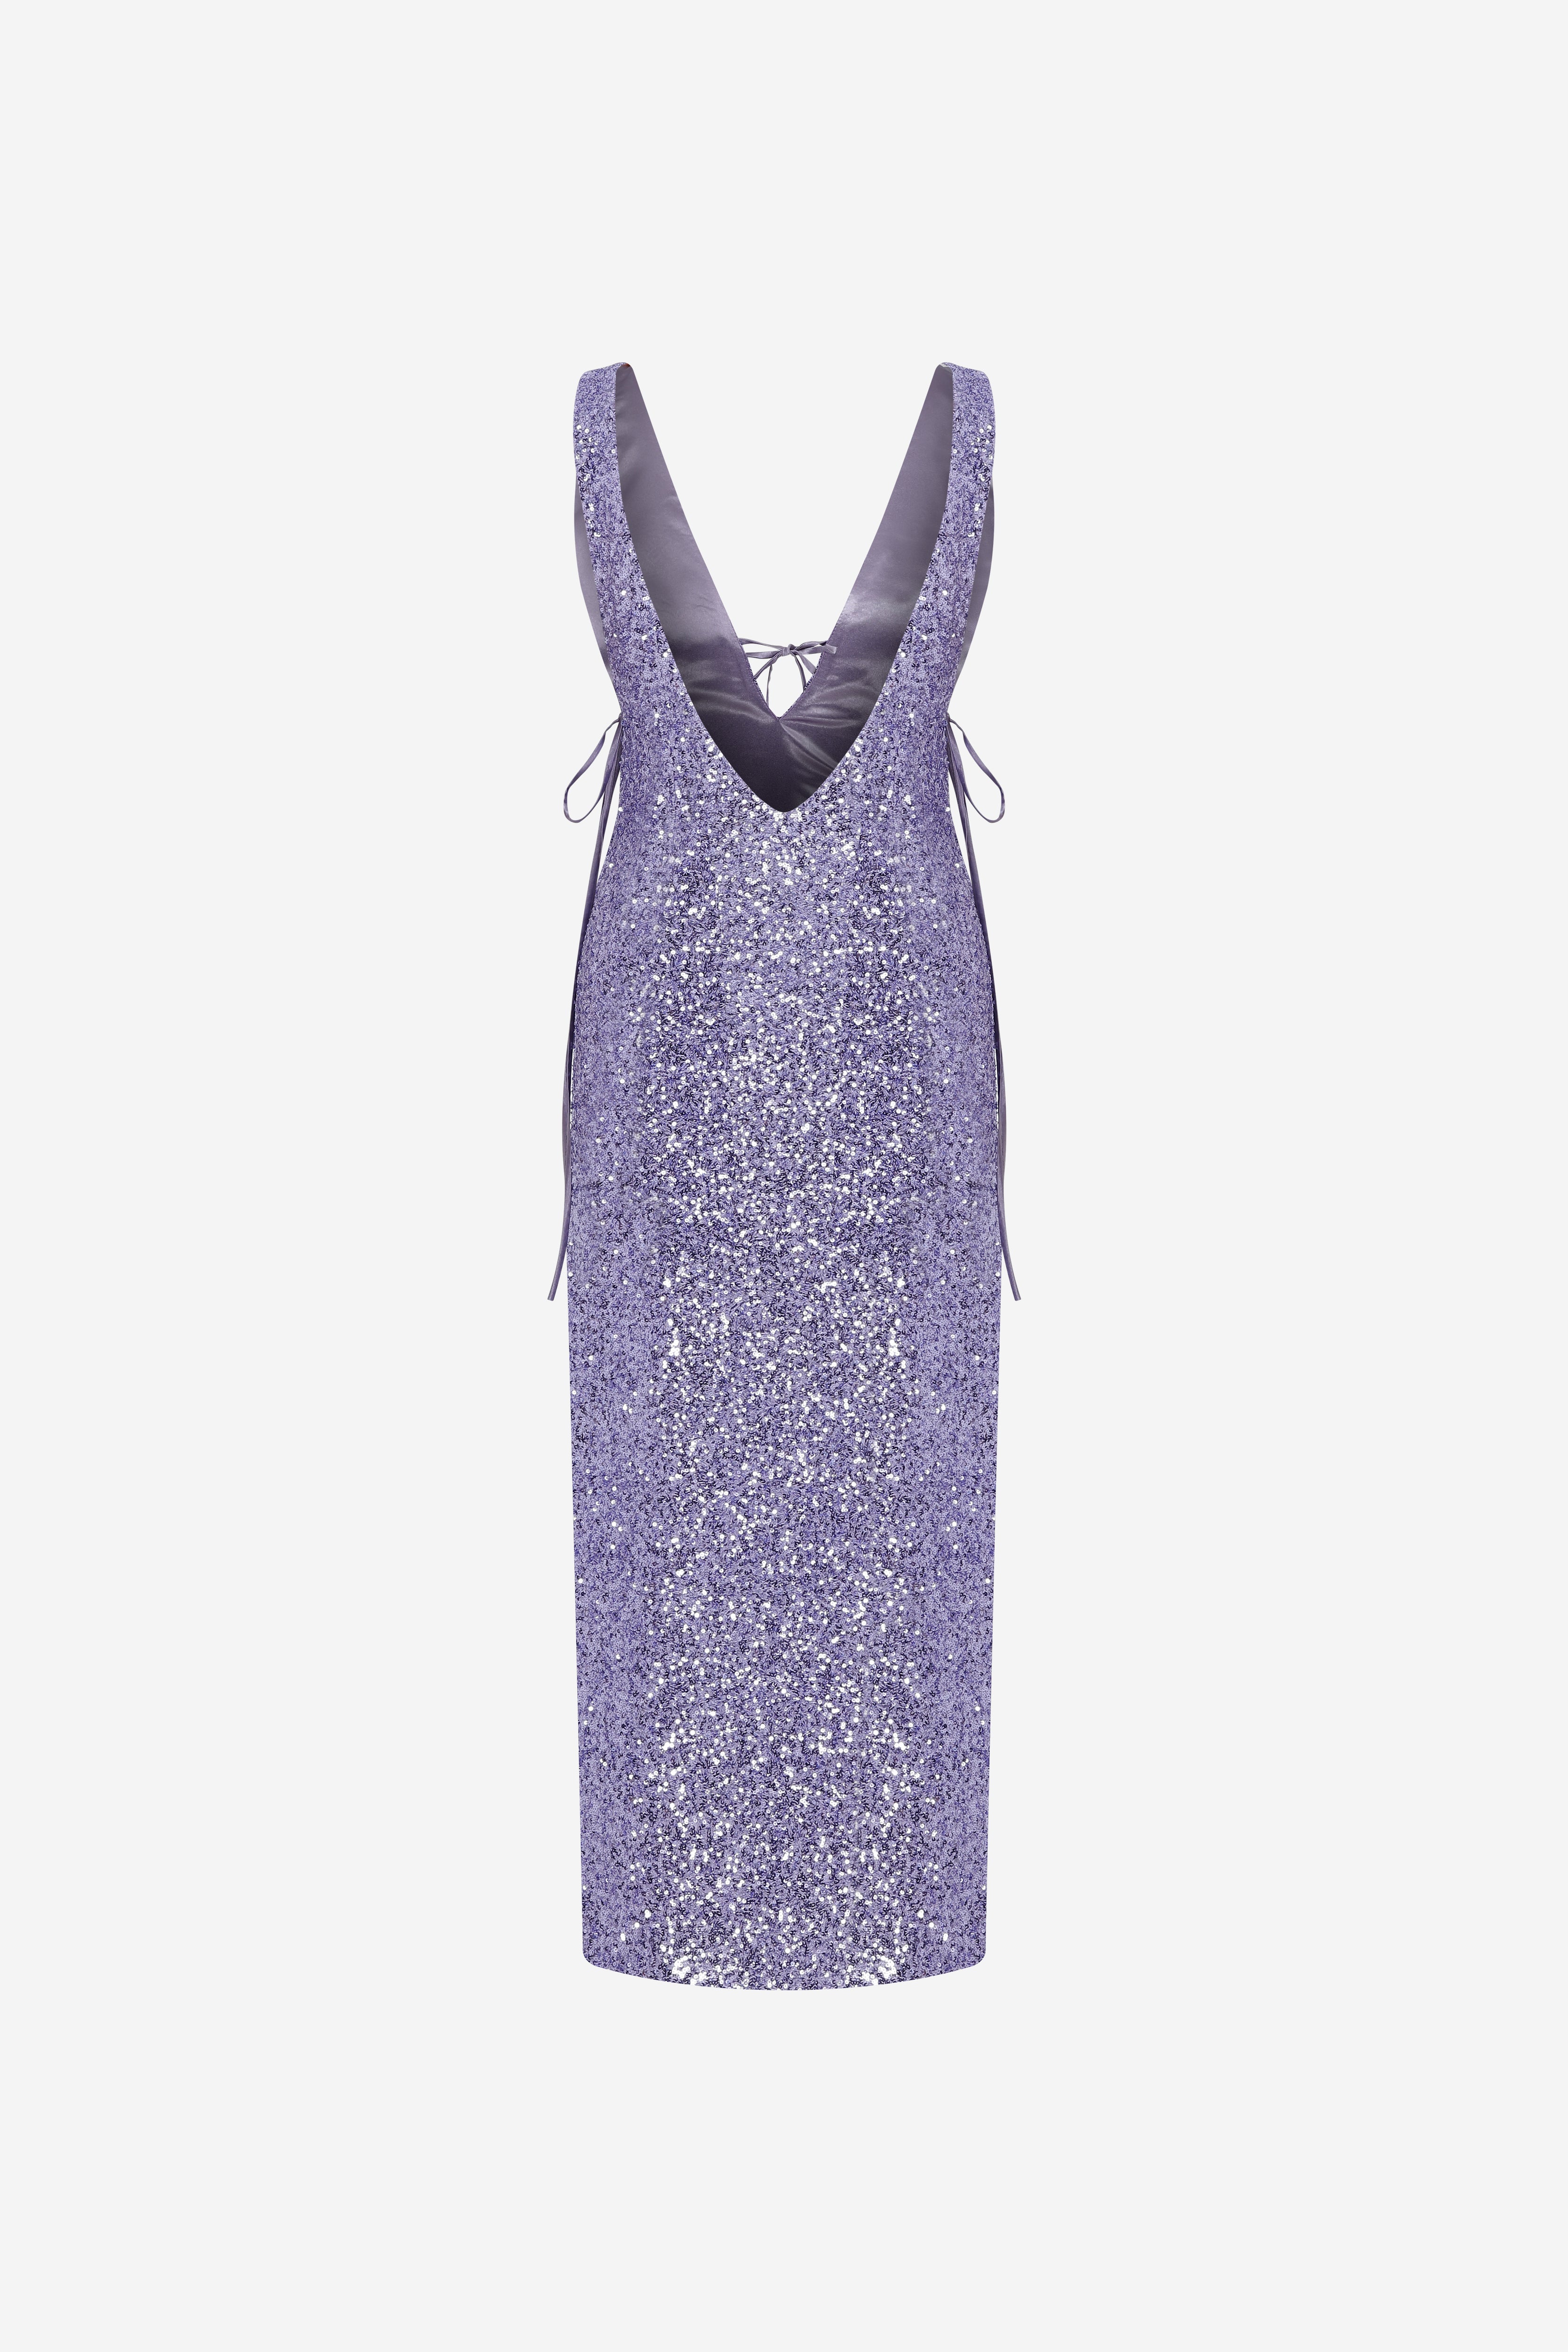 Stevie - V Neck Midi Sequin Dress in Lilac